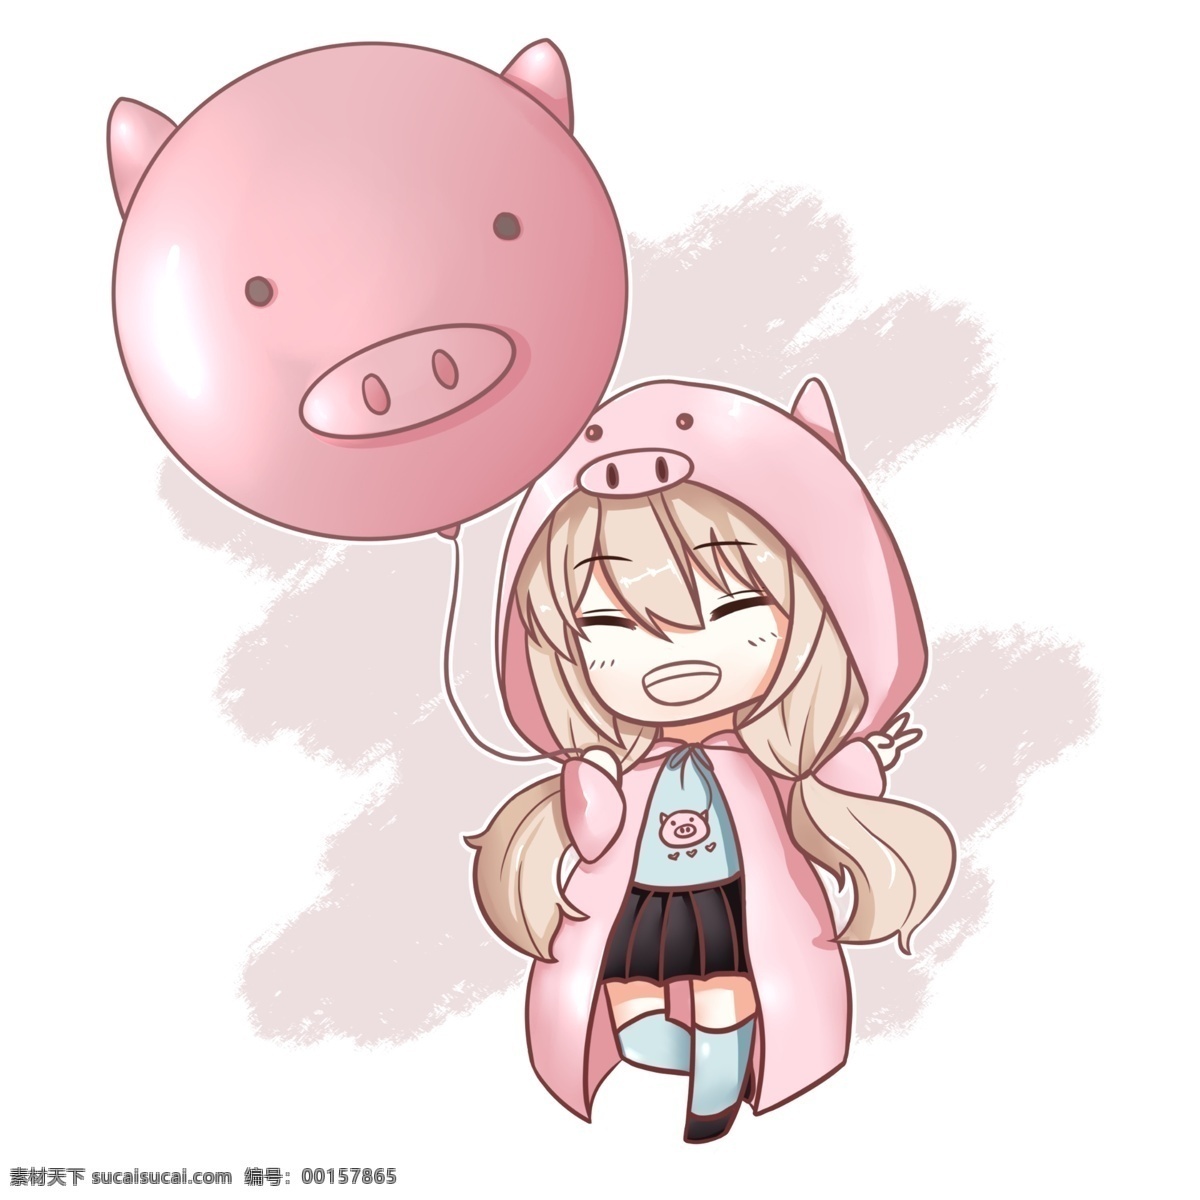 猪年 q 版 猪 女孩 手绘 q版女孩 粉红色 卡通手绘图 免抠图 气球 日系 小清新 可爱 卡通